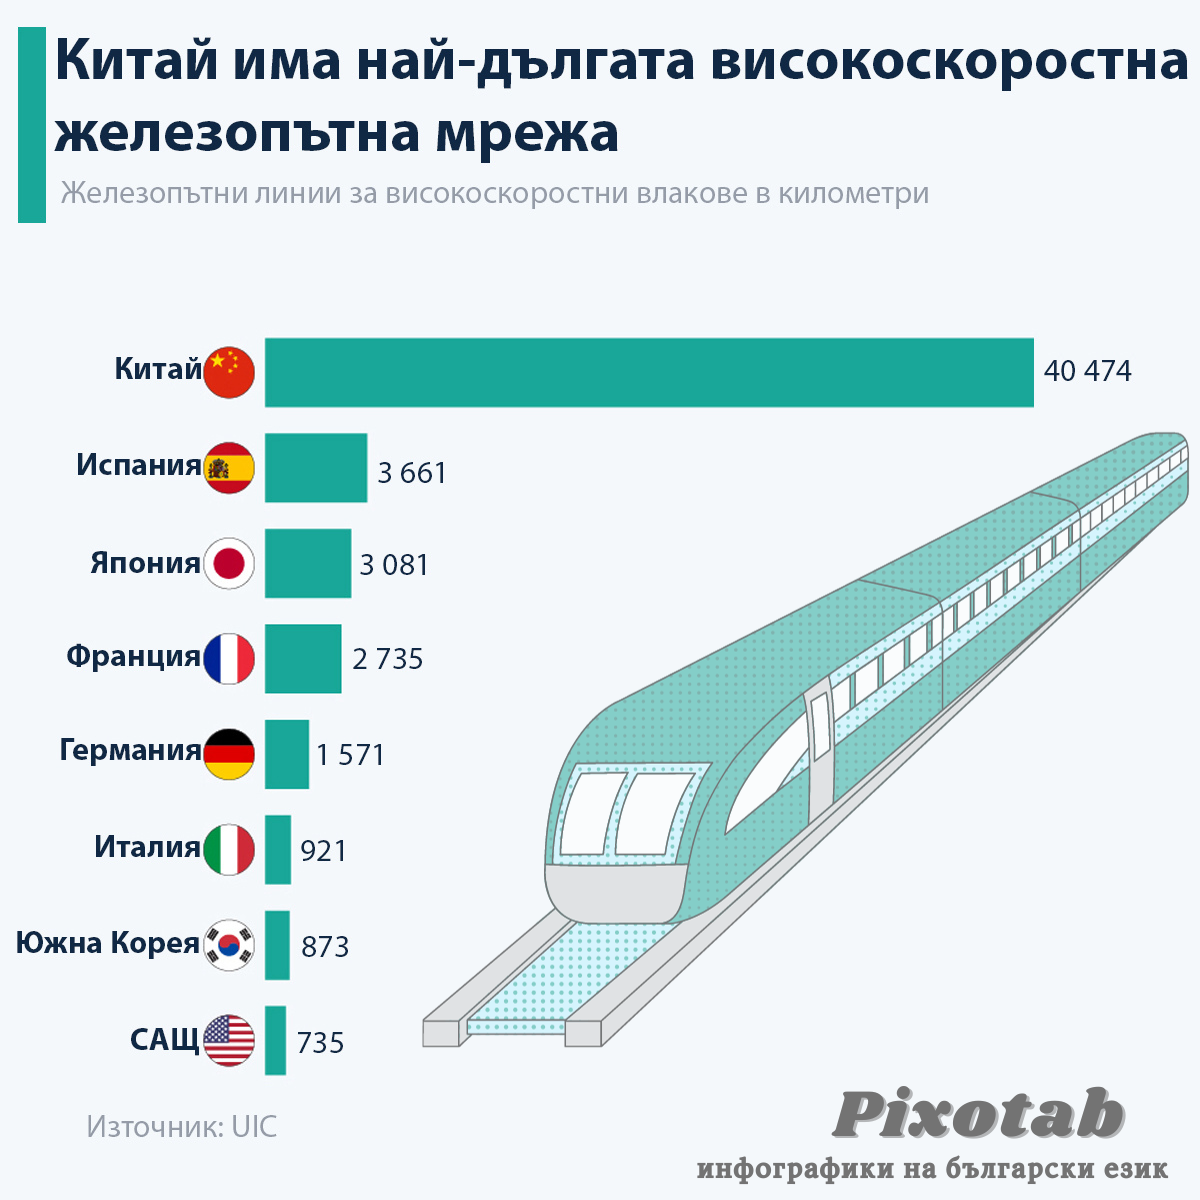 Китай има най-дългата високоскоростна железопътна мрежа